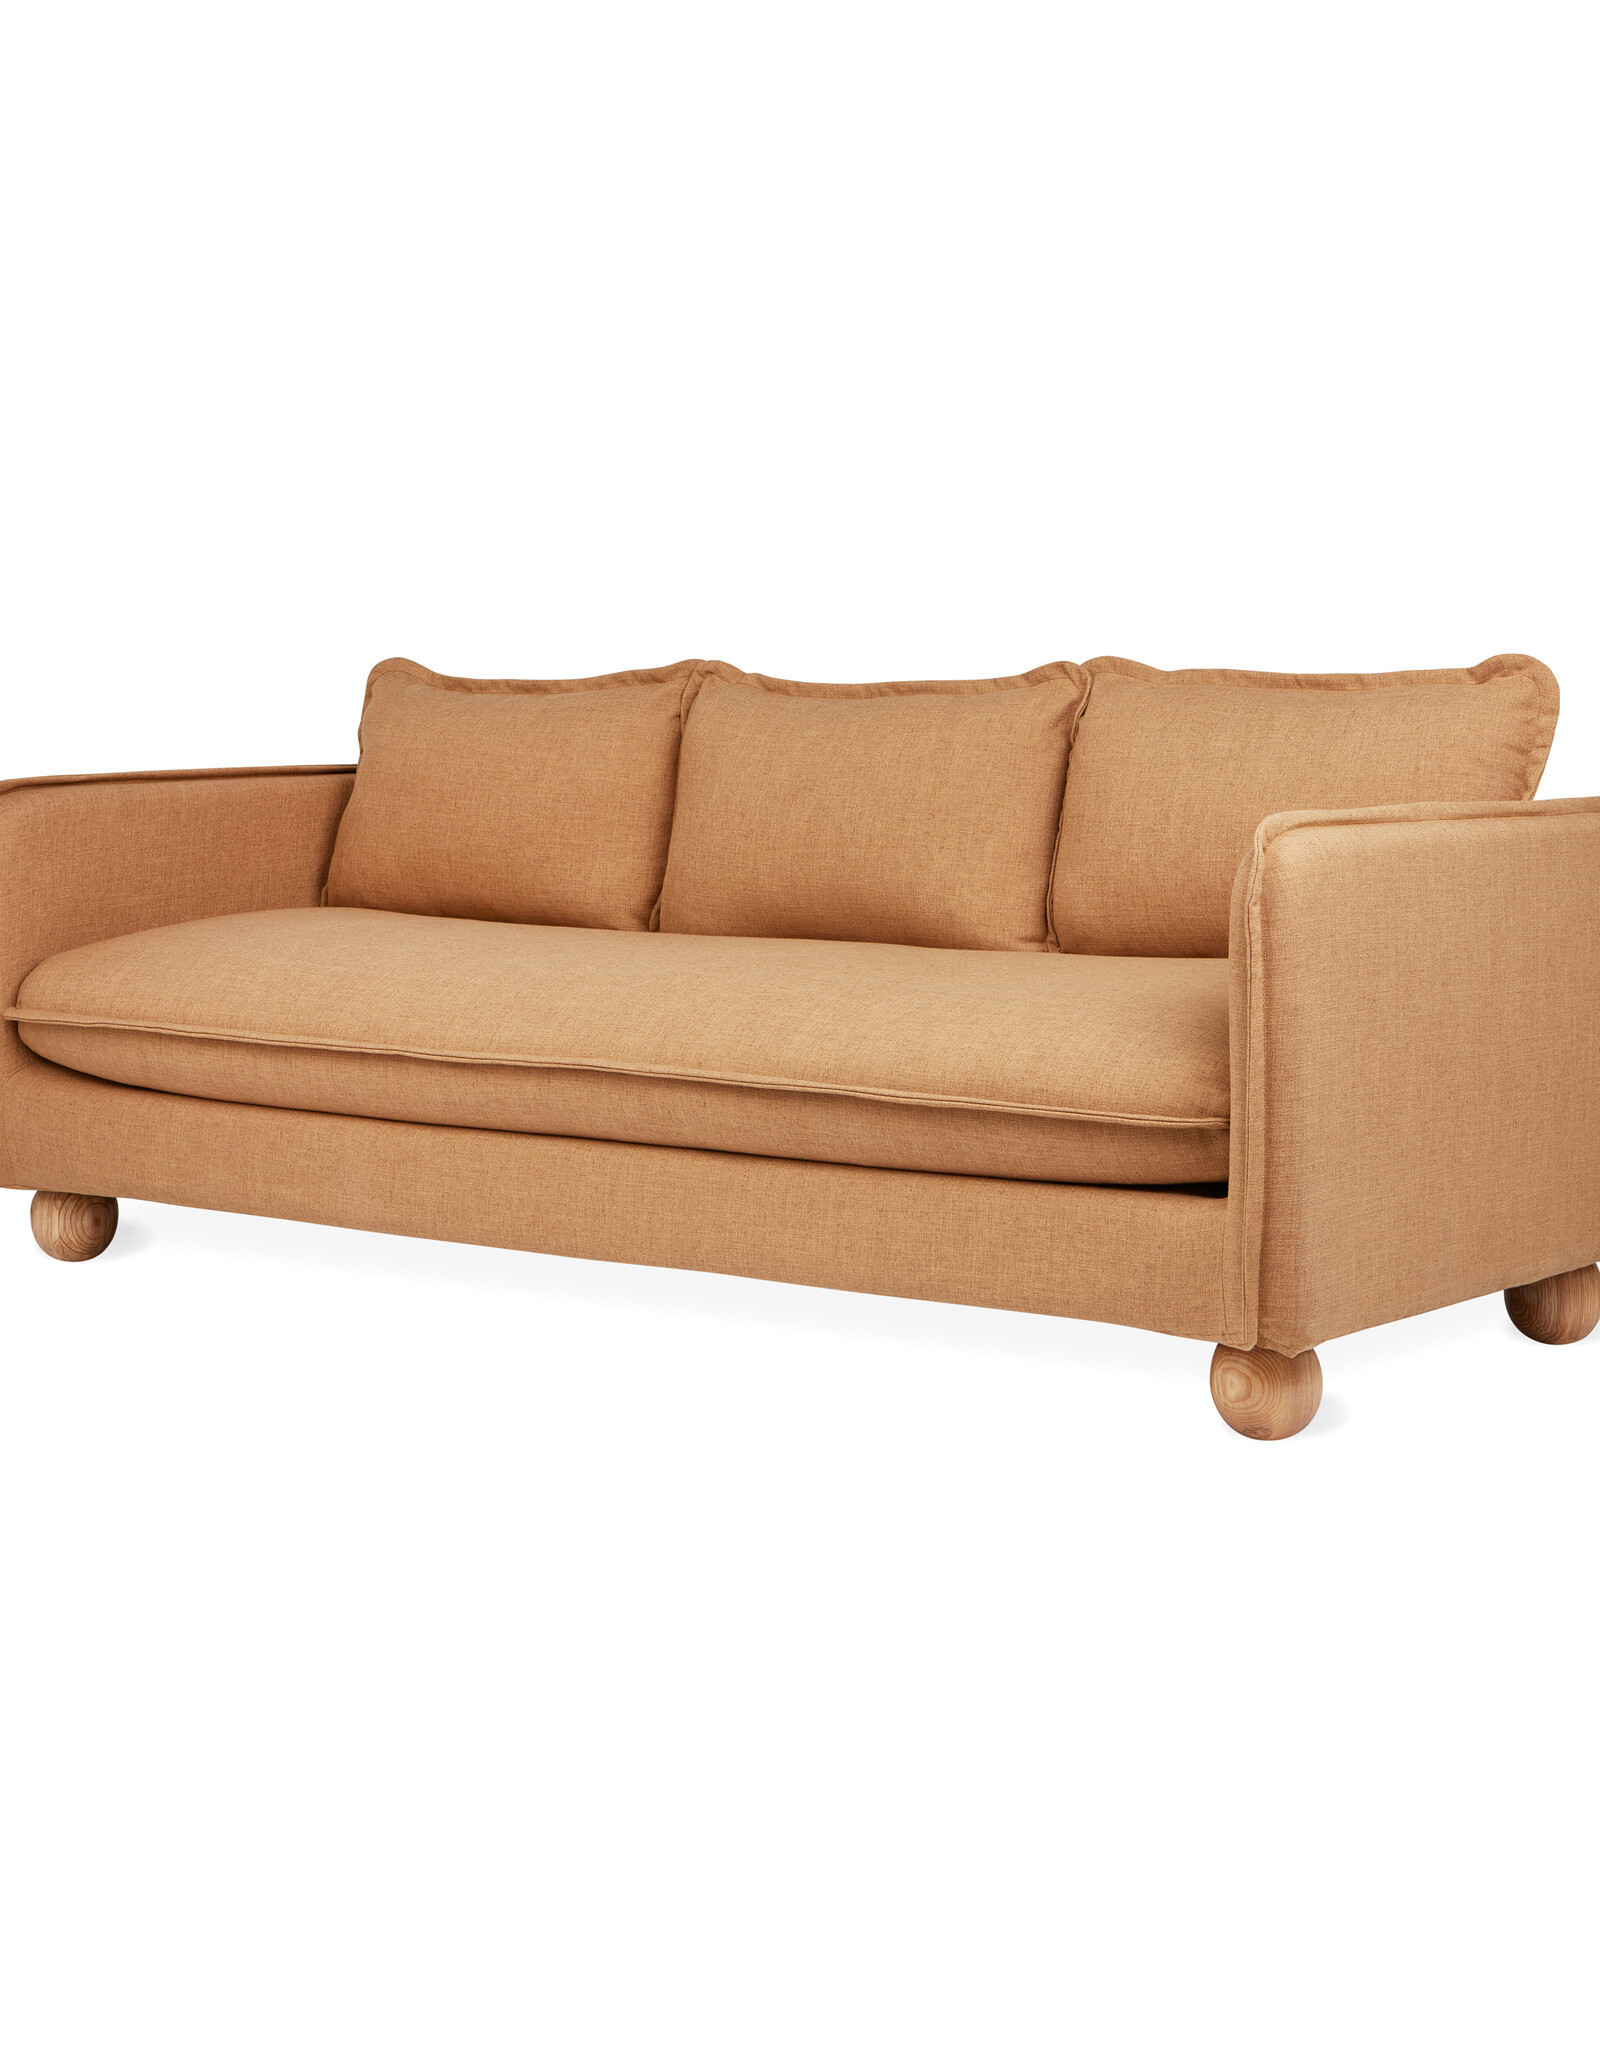 Gus* Modern Monterey Sofa (Slipcover Only)